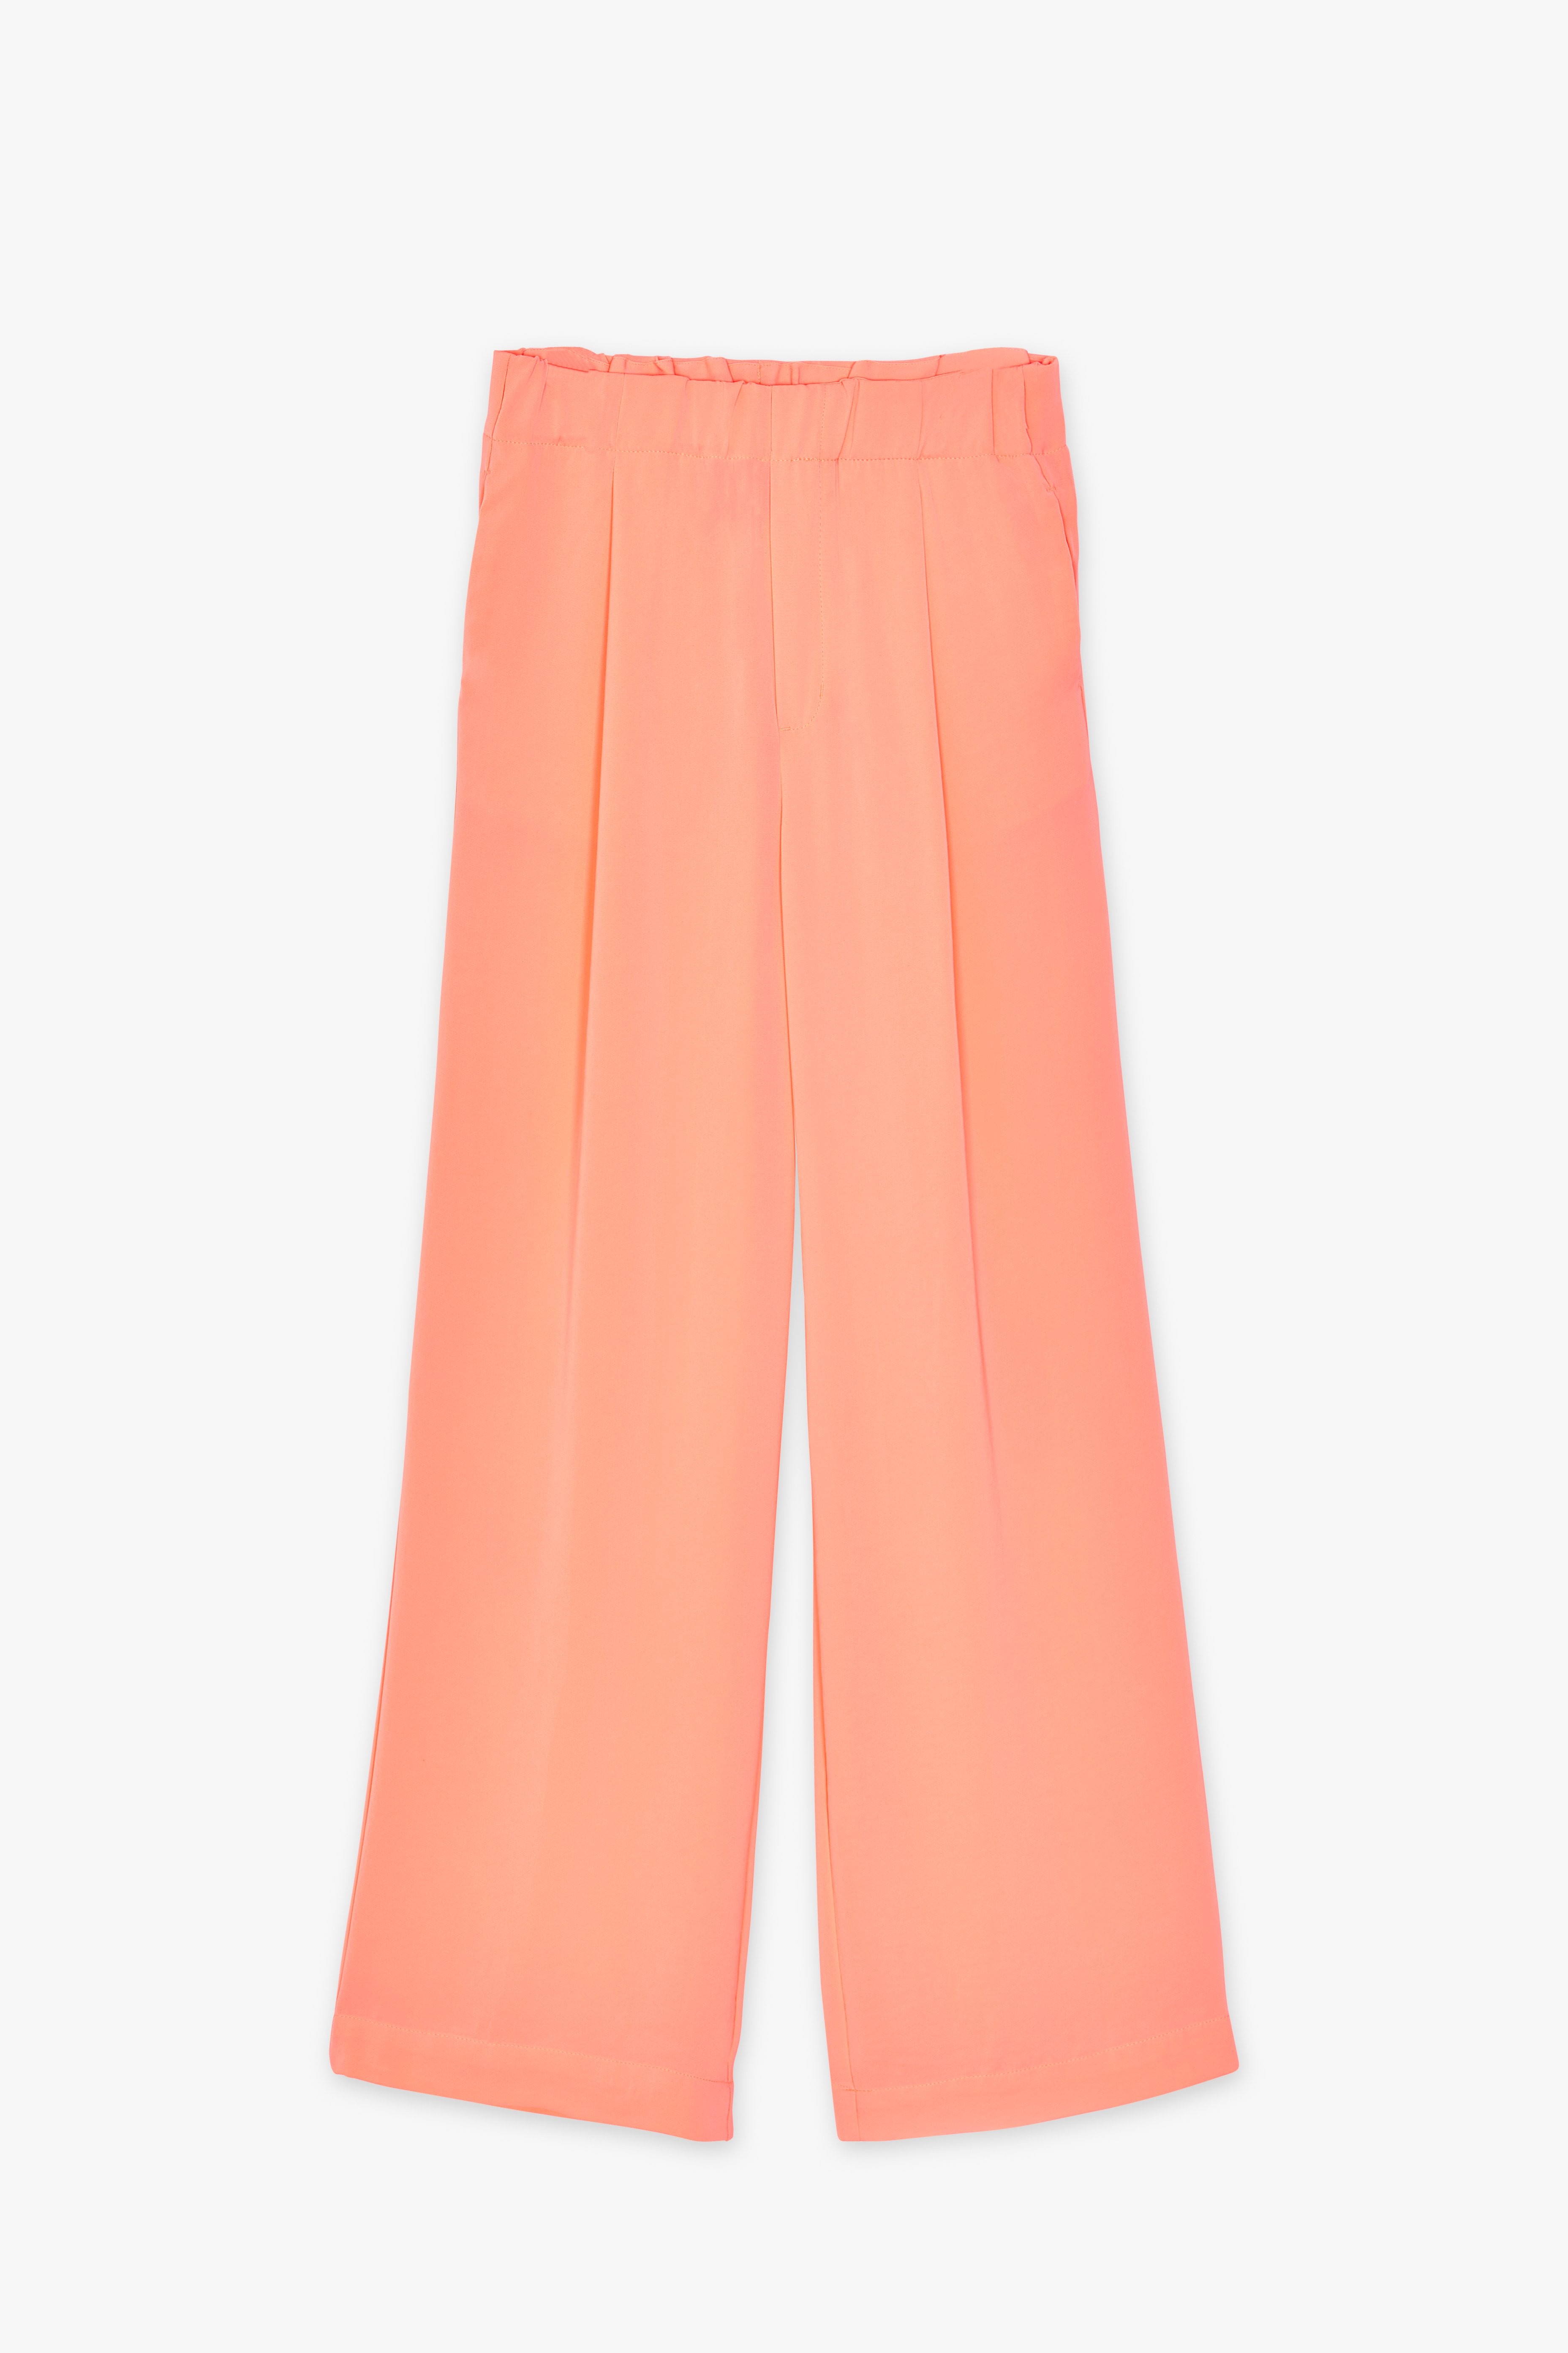 CKS Dames - LAUSANNE - pantalon long - orange vif